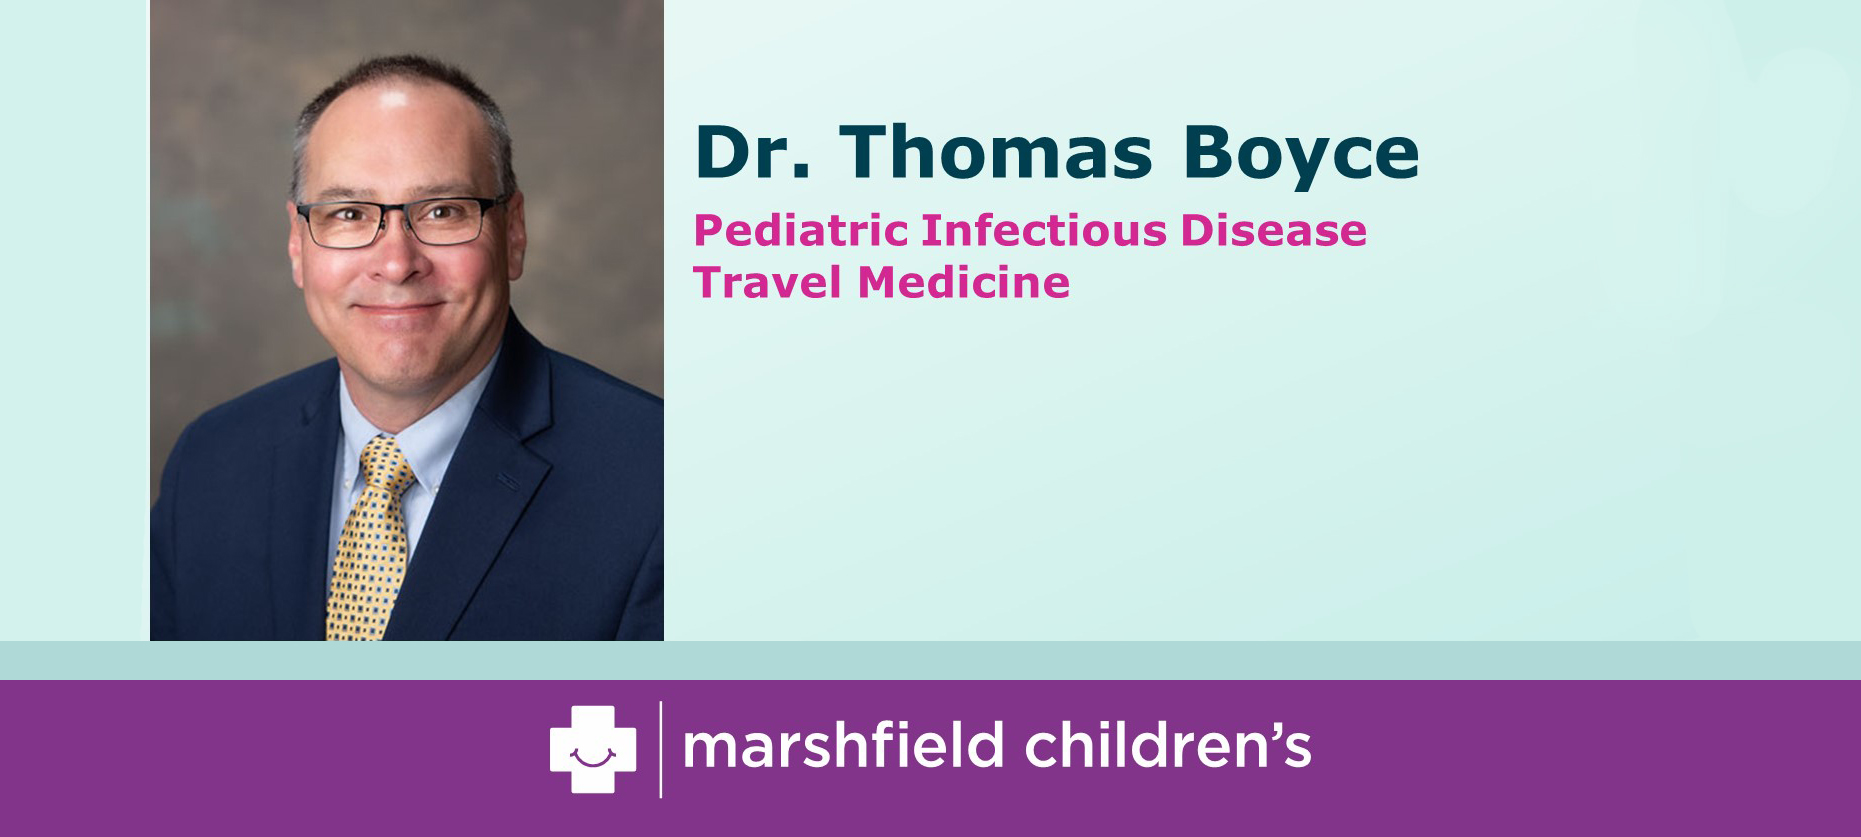 Dr. Thomas Boyce